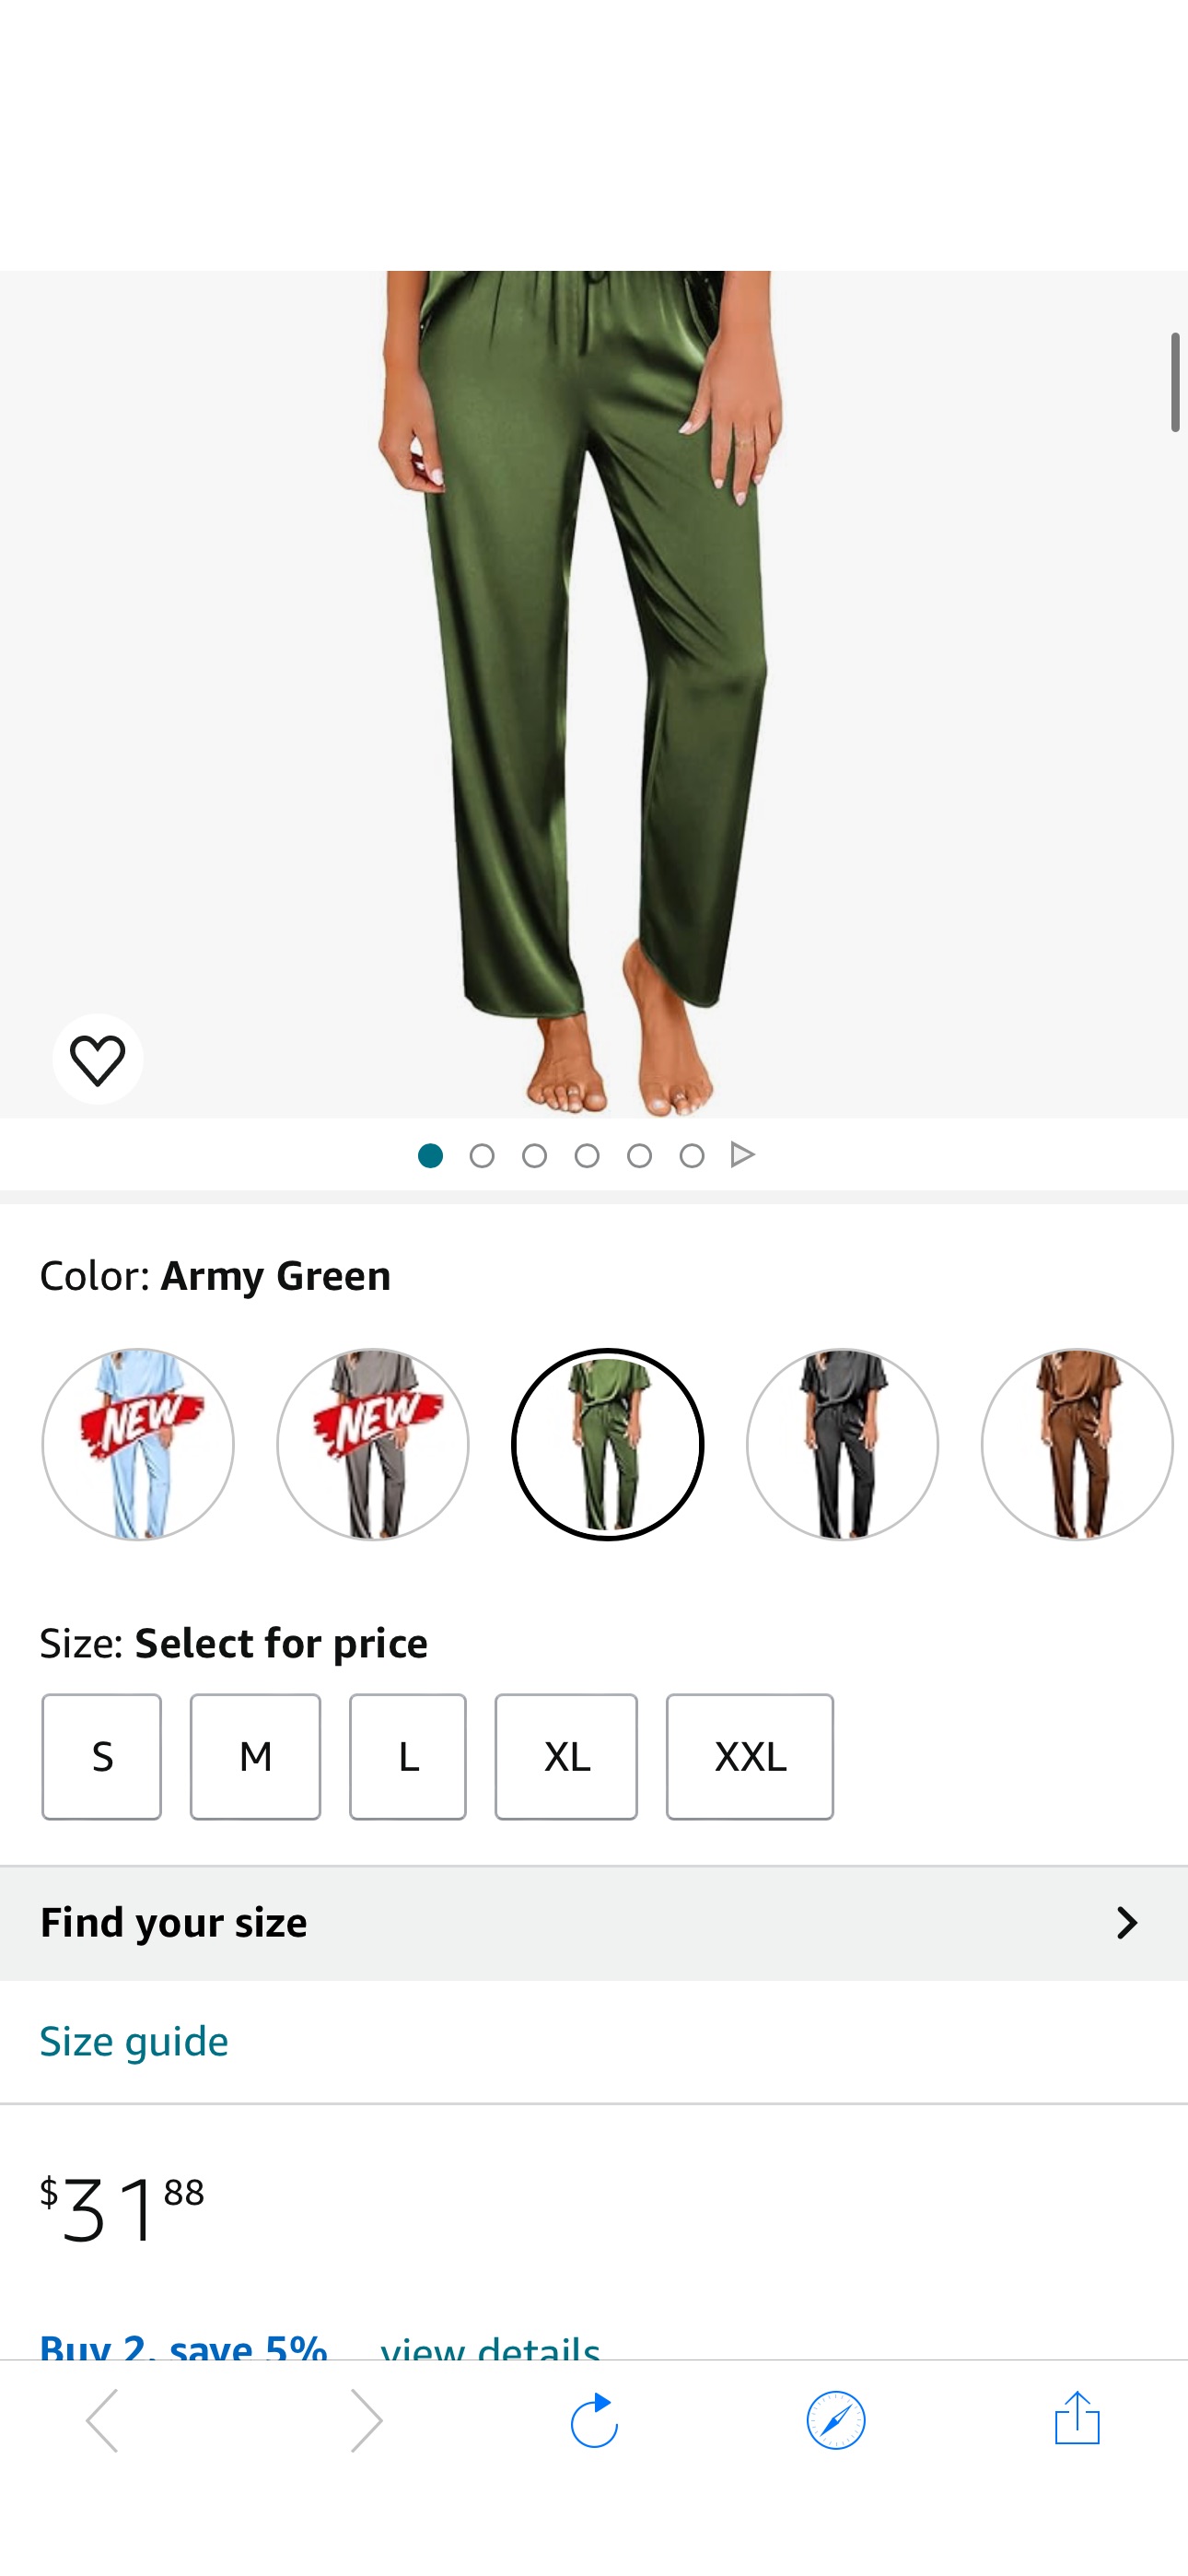 Ekouaer Silk Pajama Set Womens Satin Short Sleeve V Neck Shirt with Long Pant Lounge Set Army Green at Amazon Women’s Clothing store $12.xx Satin Pajama Set
Use code 34V4YX9Z